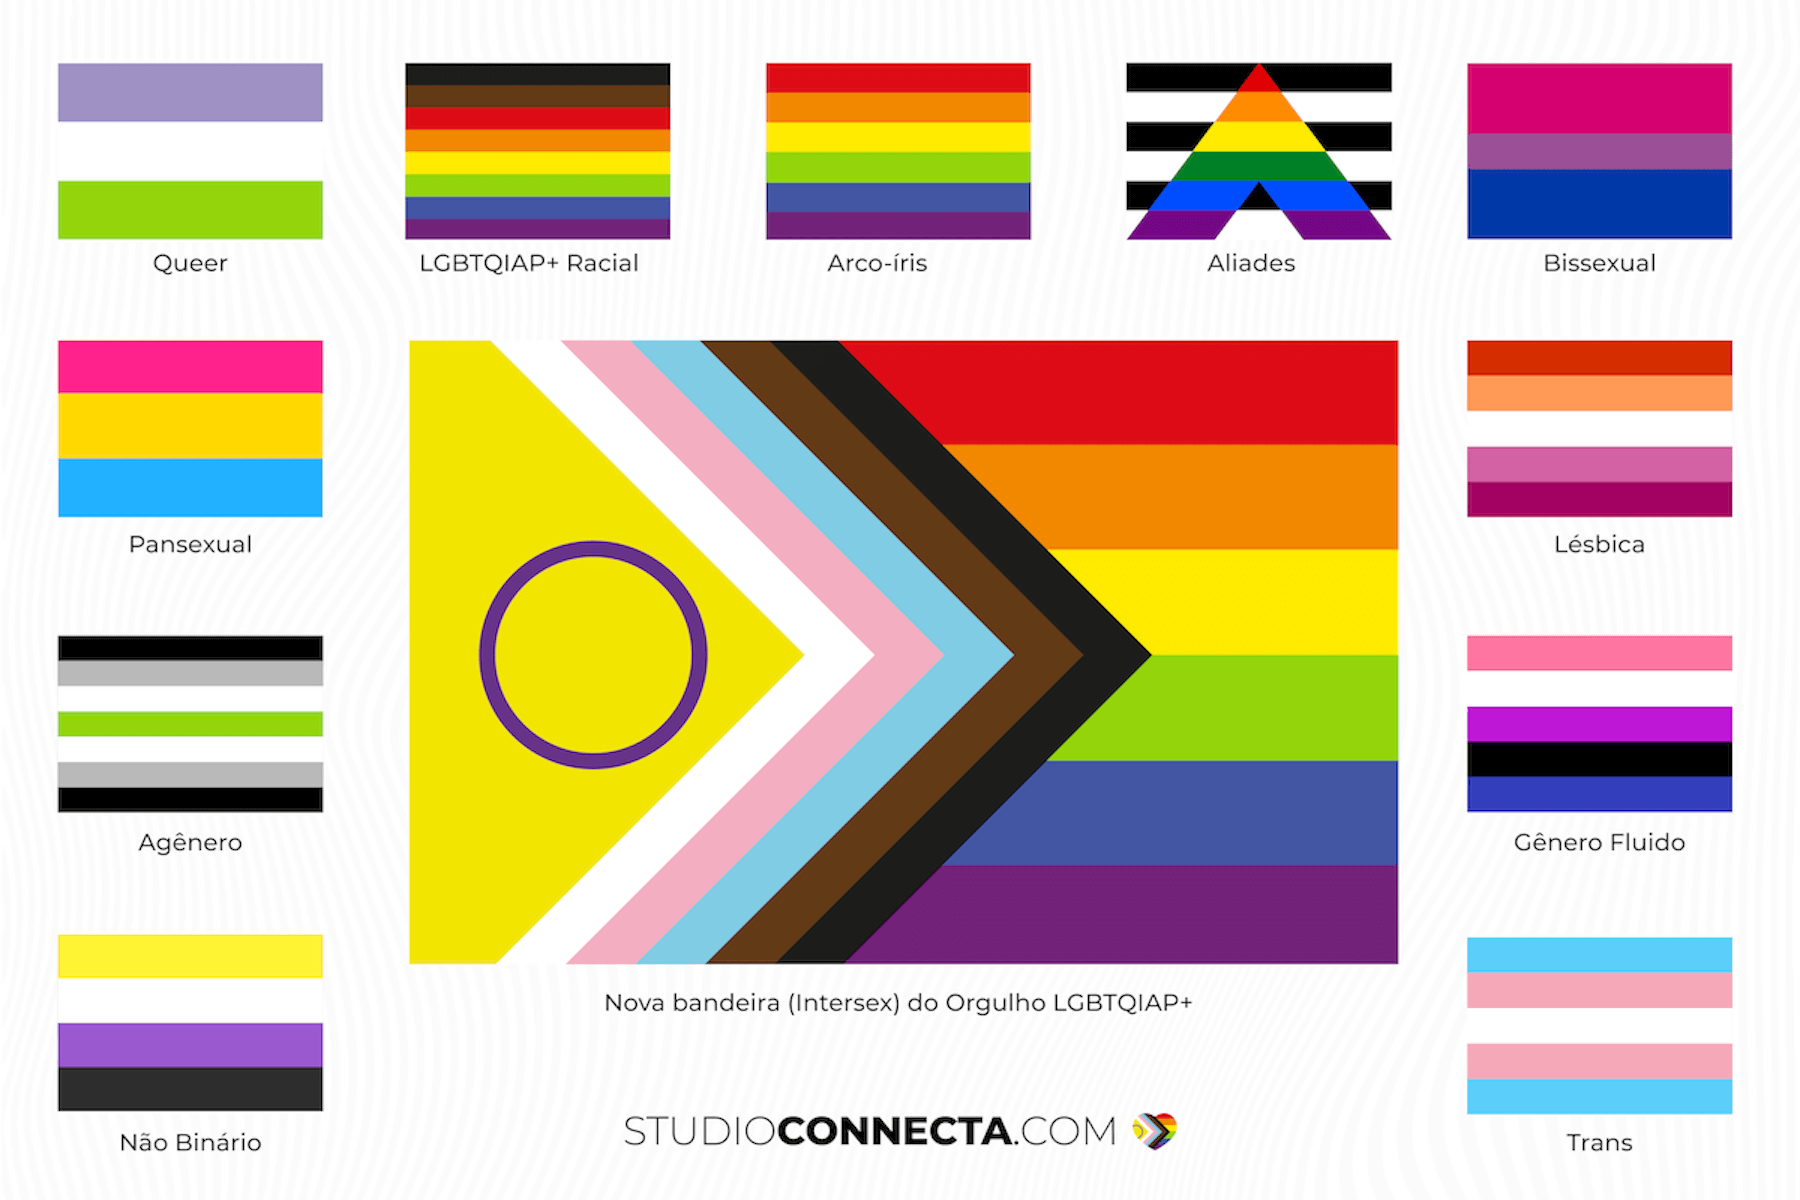 Das raízes às revoluções. A evolução da bandeira LGBTQIAP+ e tudo que ela representa.